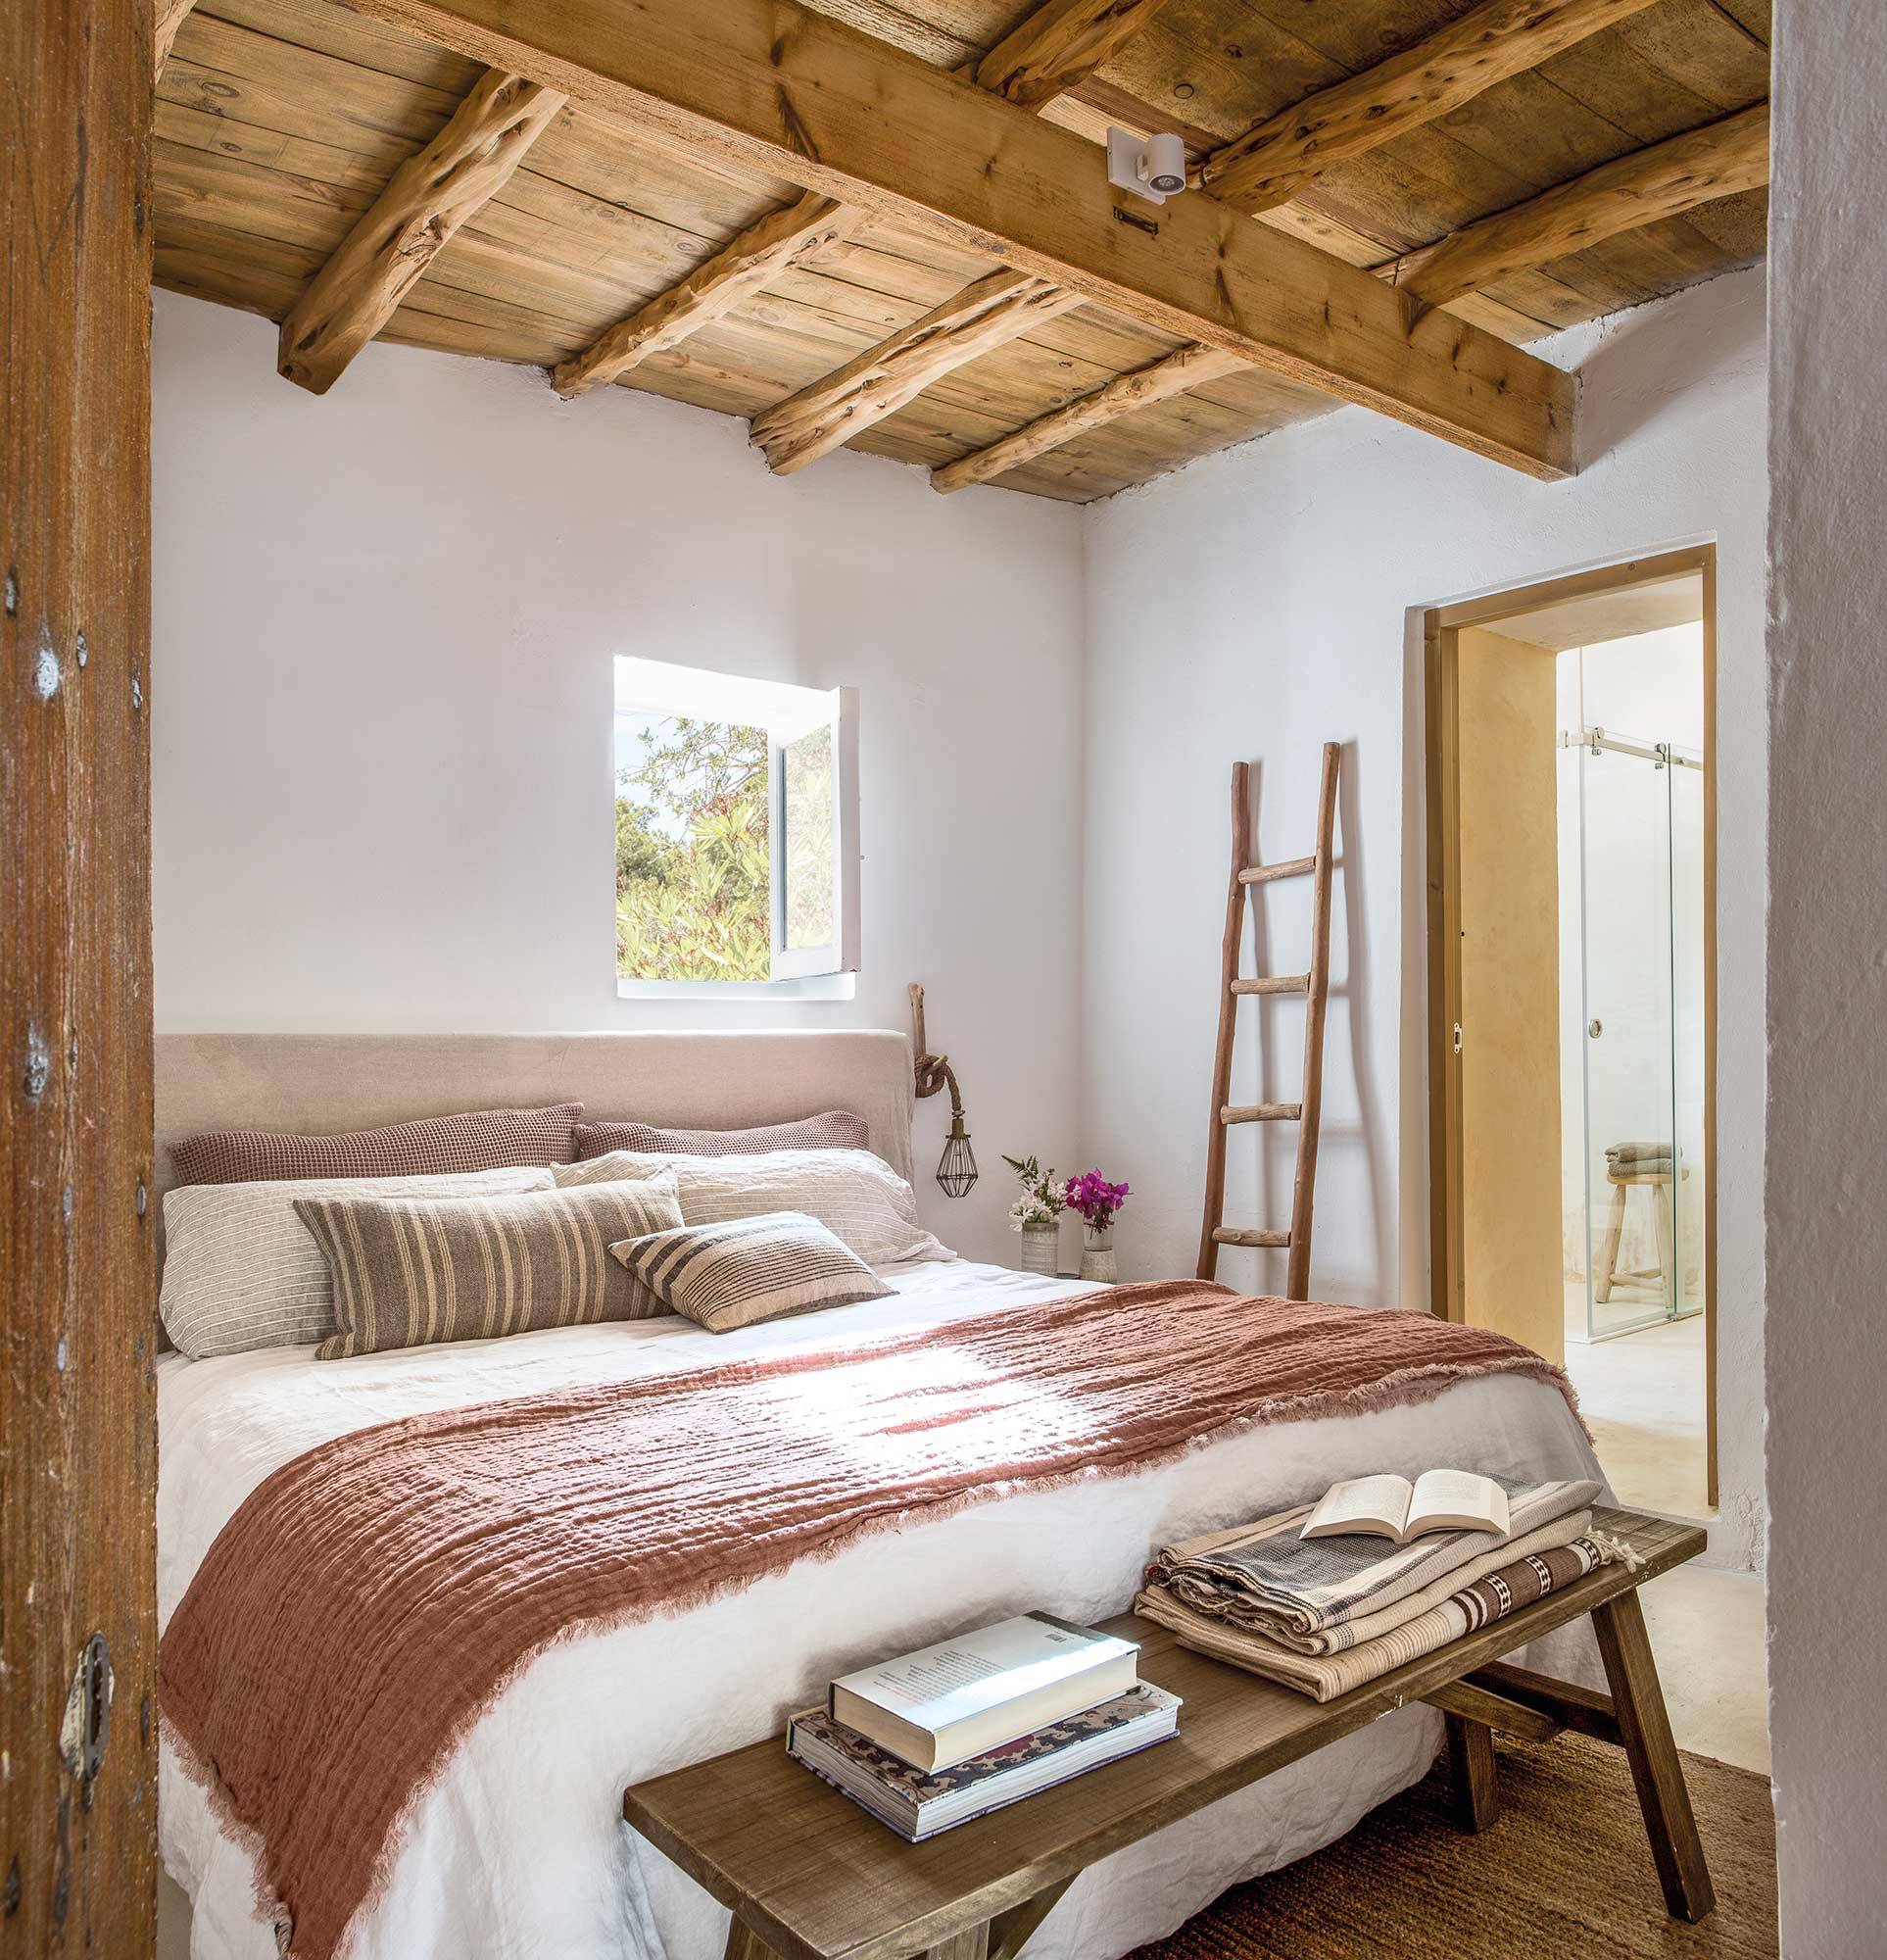 Dormitorio blanco campestre con vigas de madera_00508681